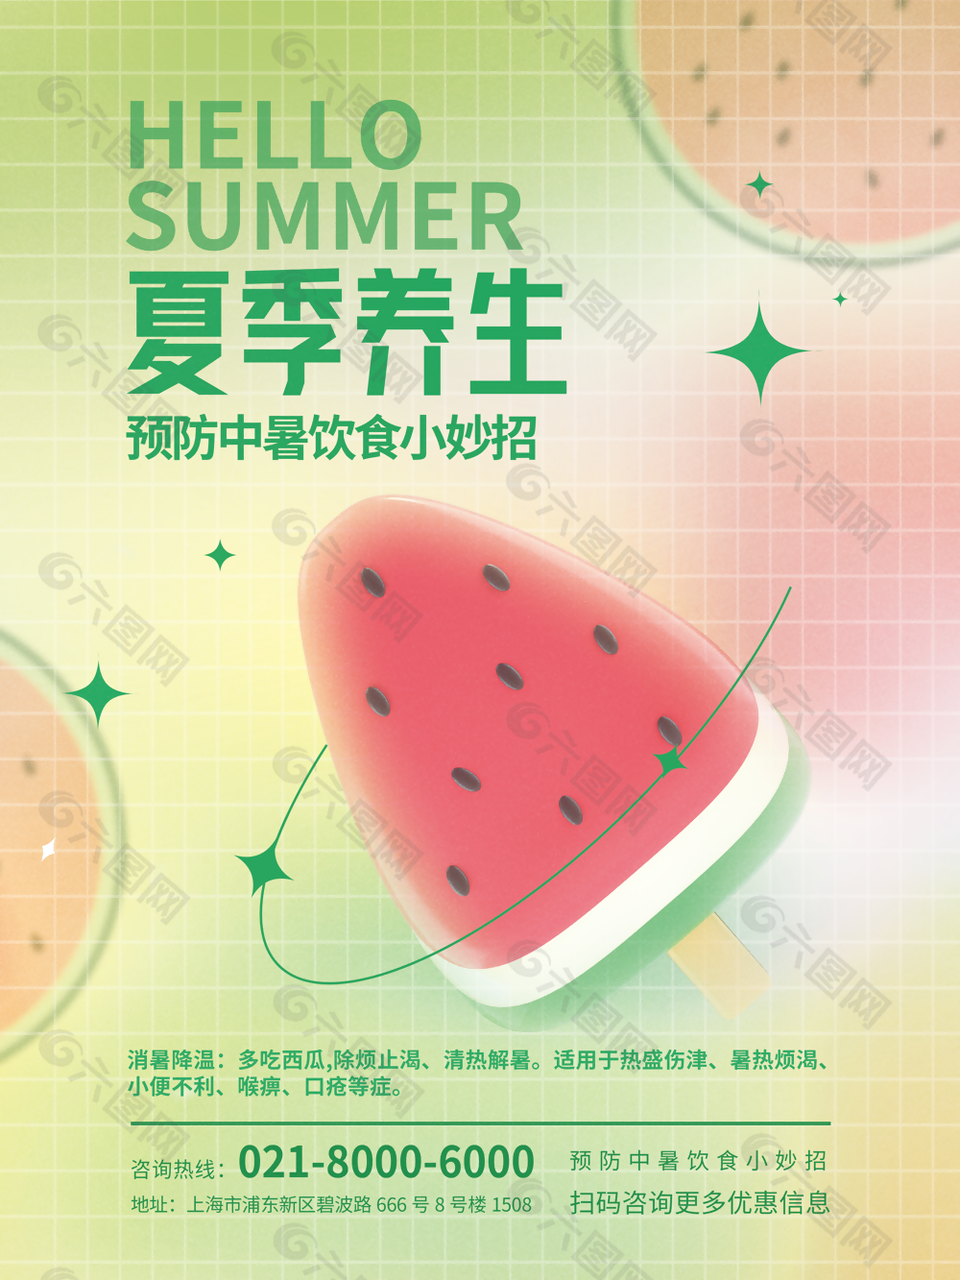 卡通手绘风夏季中暑饮食妙招海报图设计